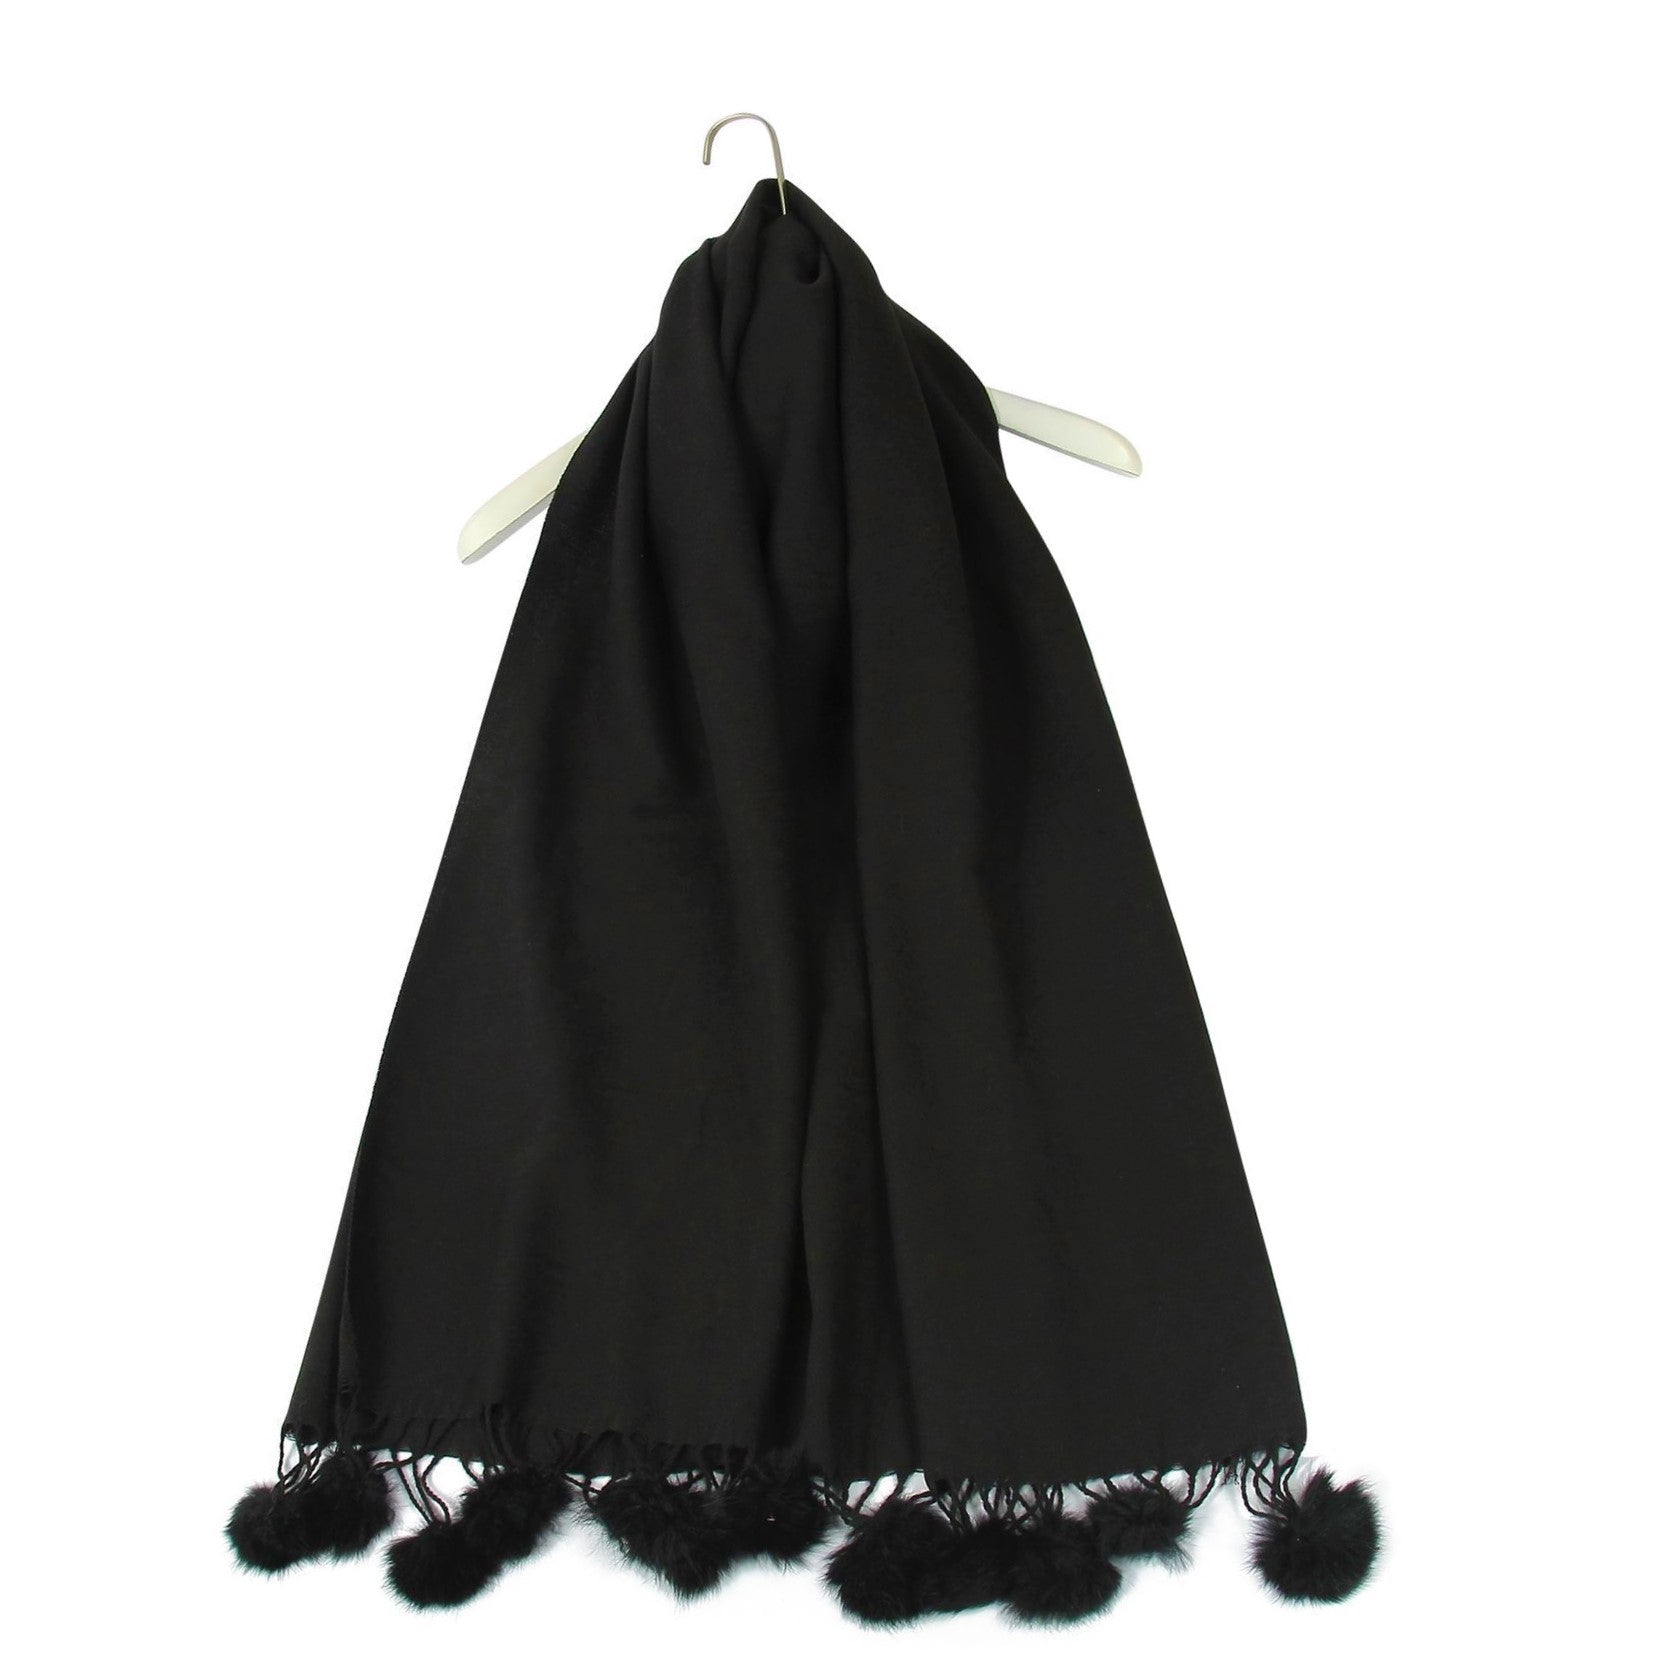 Šála-šátek s Pravou Pom Pom Kožešinou, 60 cm x 170 cm, Černá | -80% Akce na Šperky